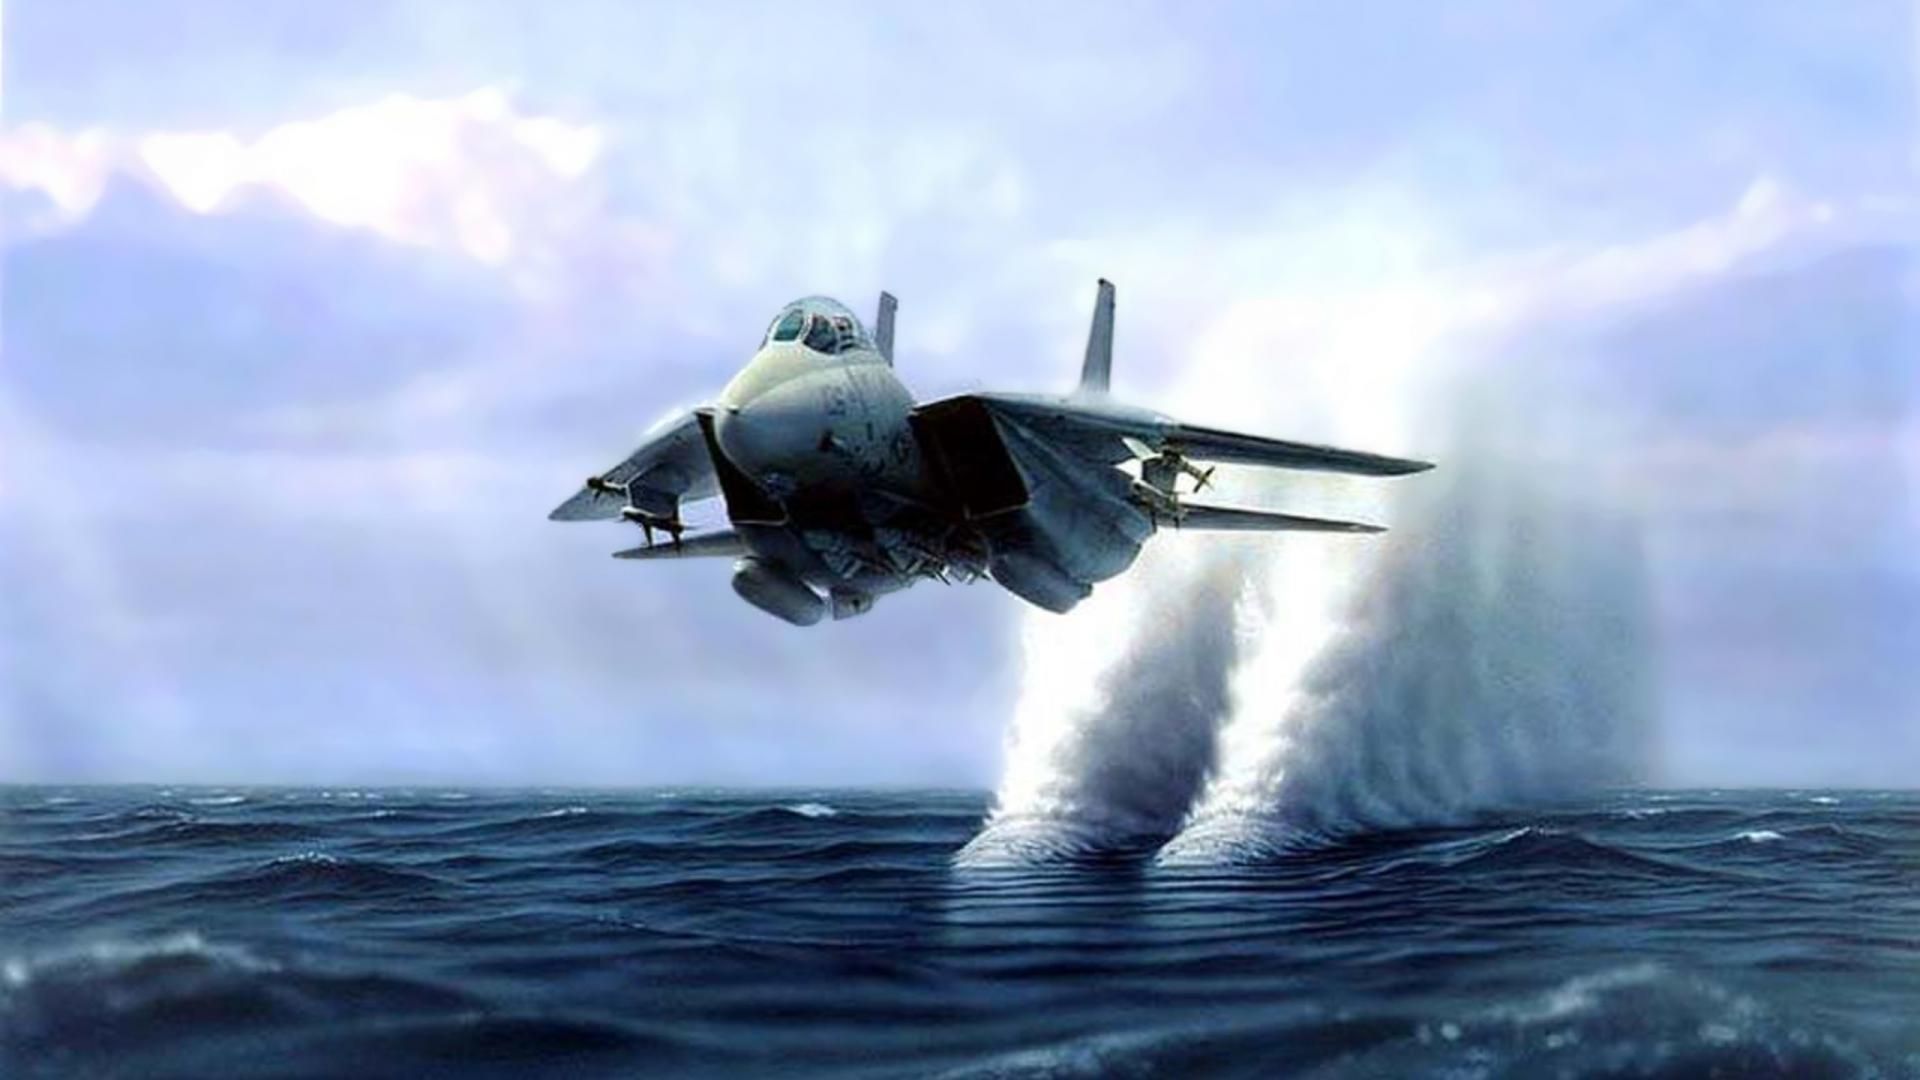 3D Jet Fighter Live Wallpaper Apps on Google Play. Fighter jets, Fighter planes, Fighter aircraft